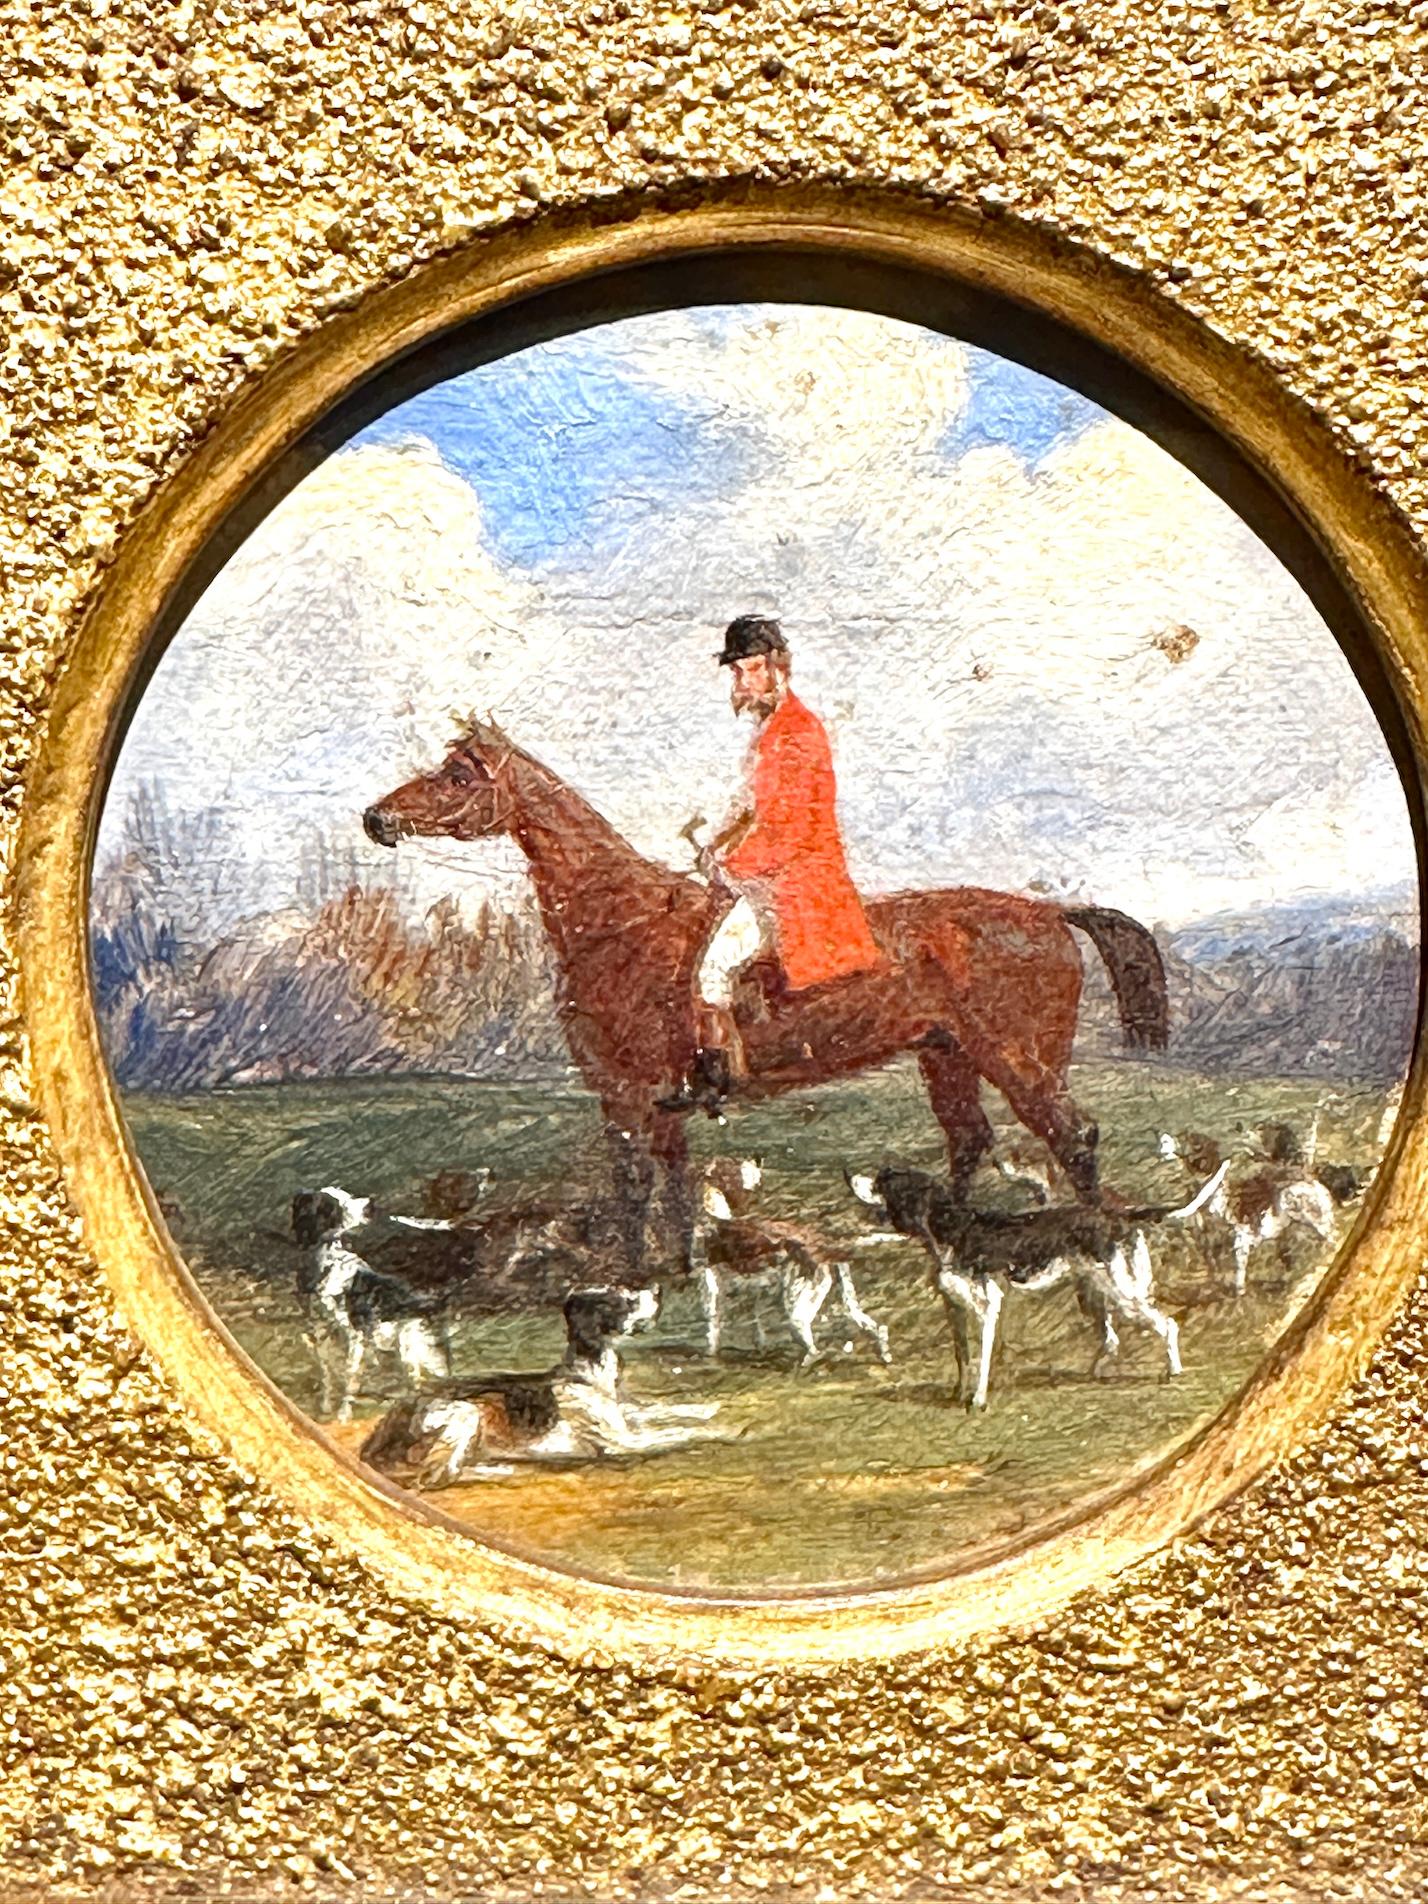 Ancienne Angleterre du 19ème siècle, paire de chasseurs chevauchant des chiens dans un paysage - Victorien Painting par John Frederick Herring Jr.